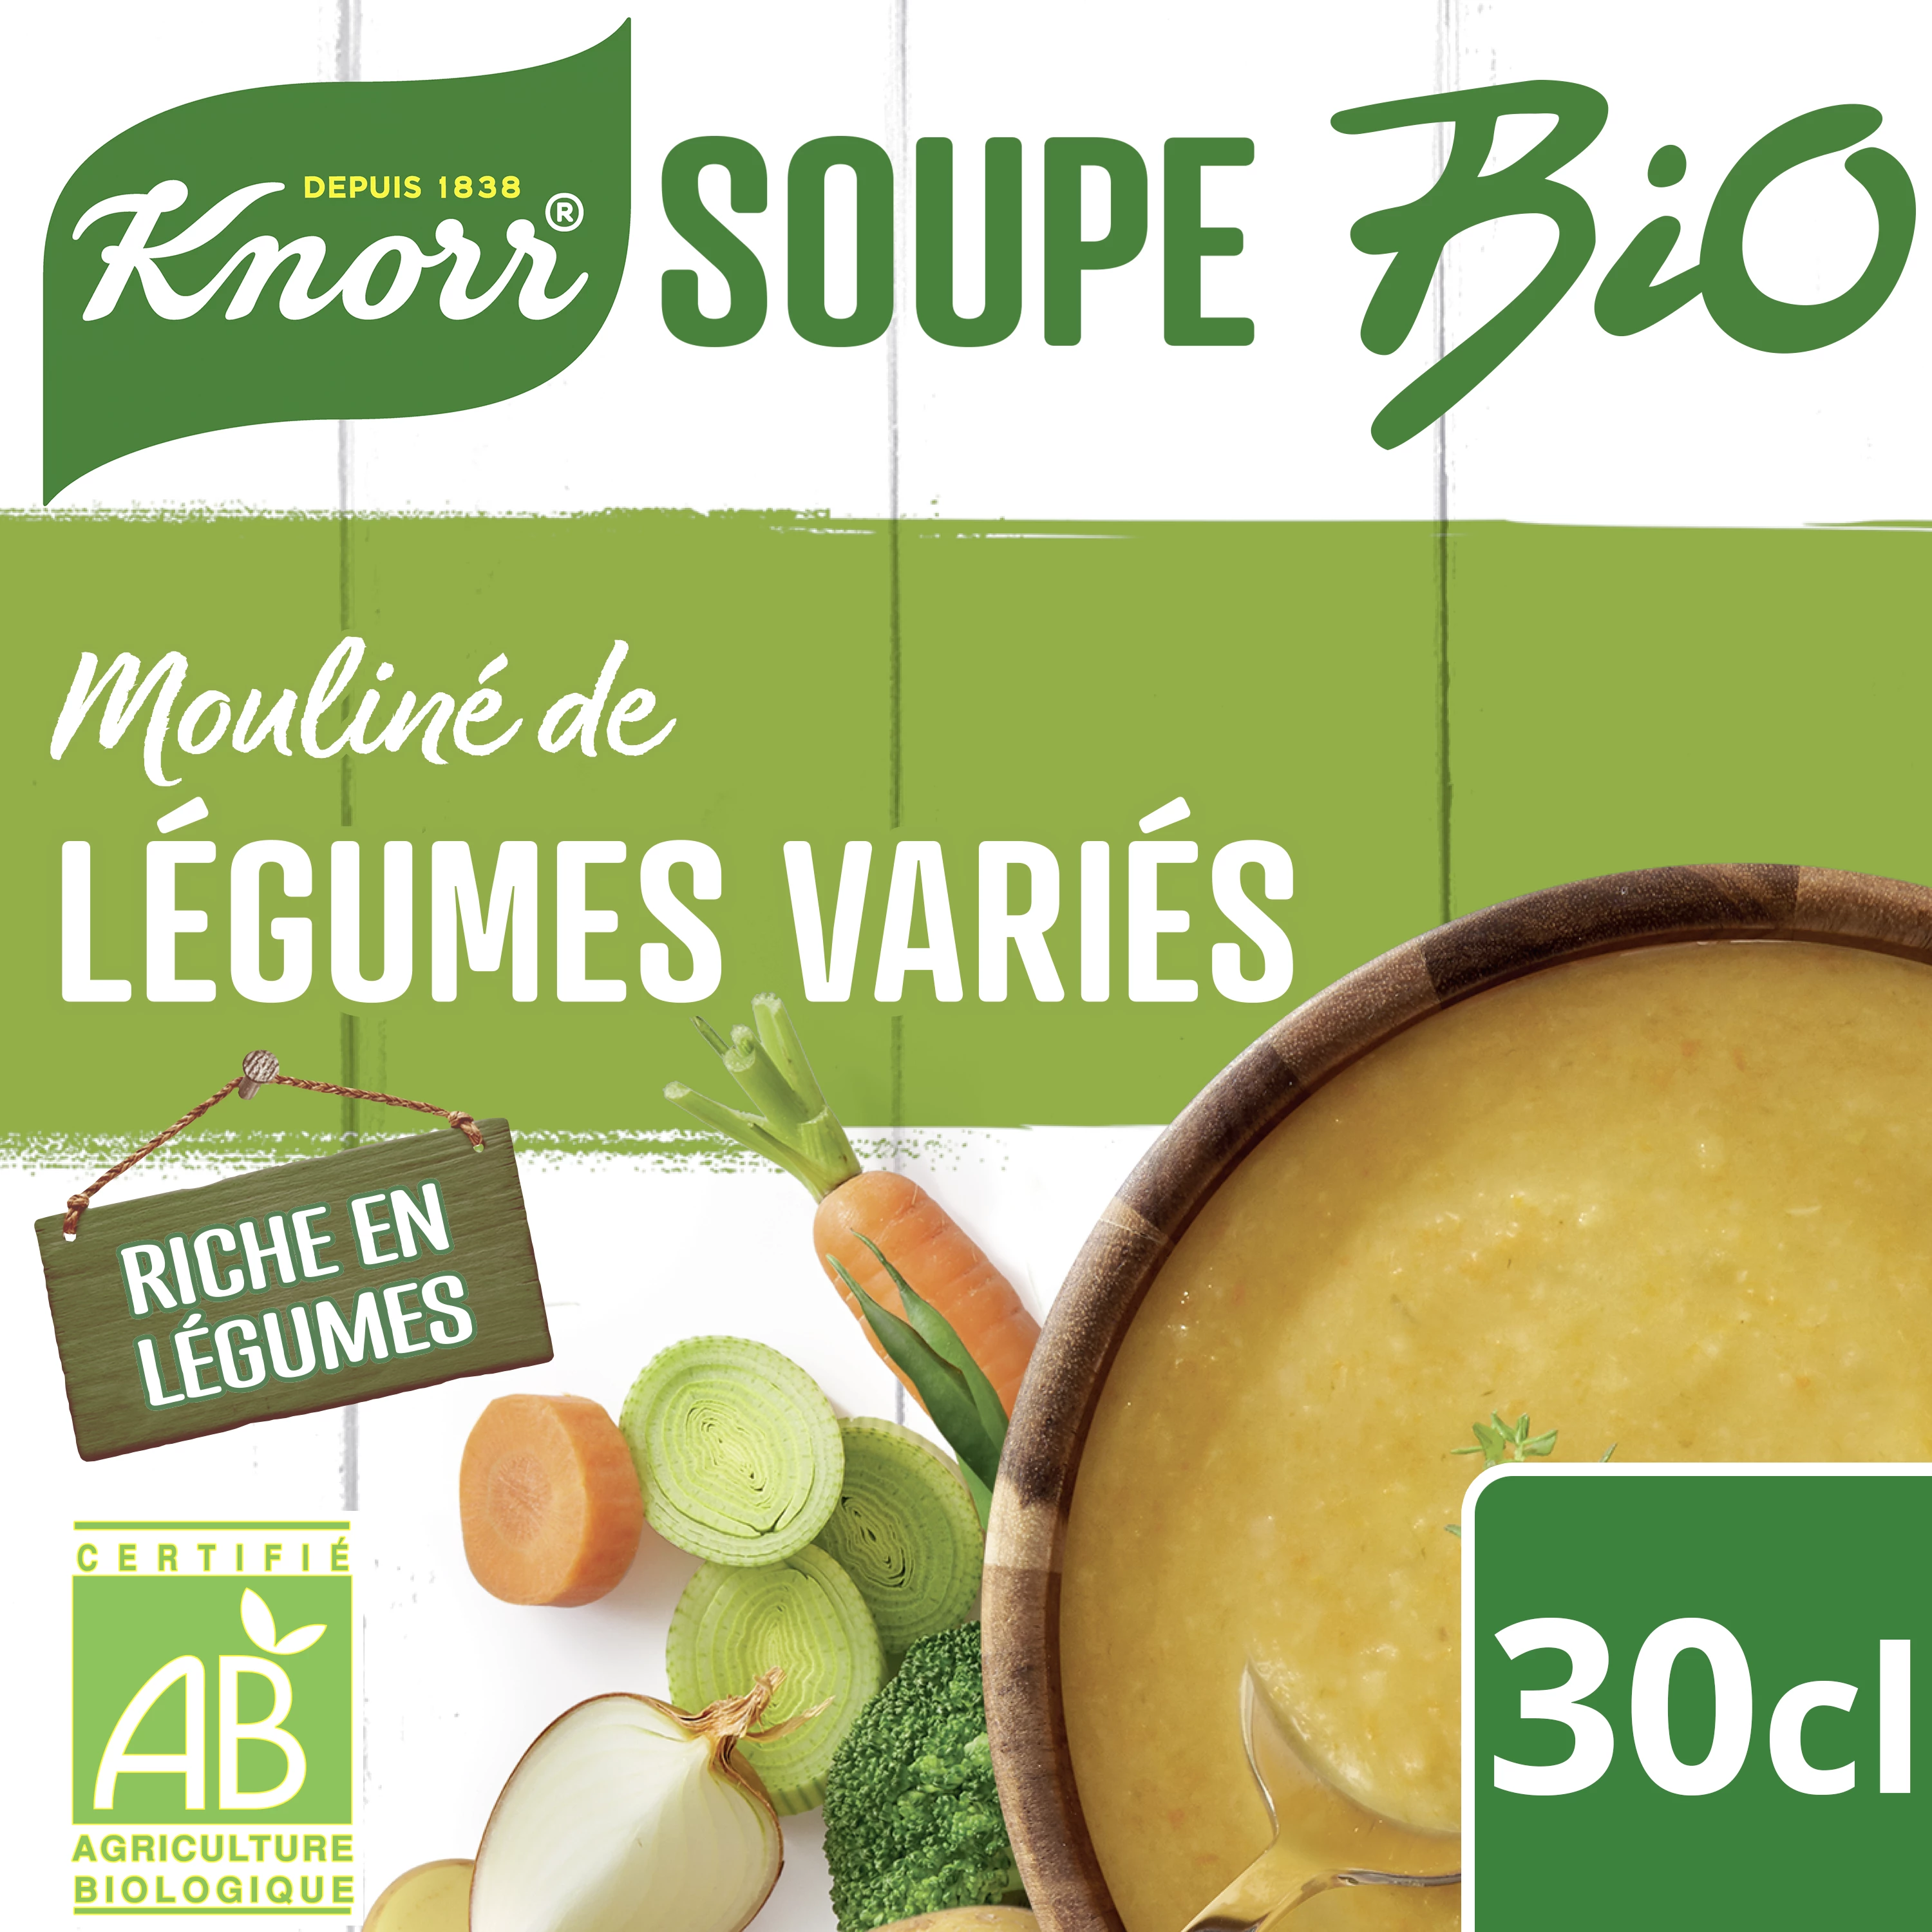 Суп-мулине из органических огородных овощей 30cl - KNORR